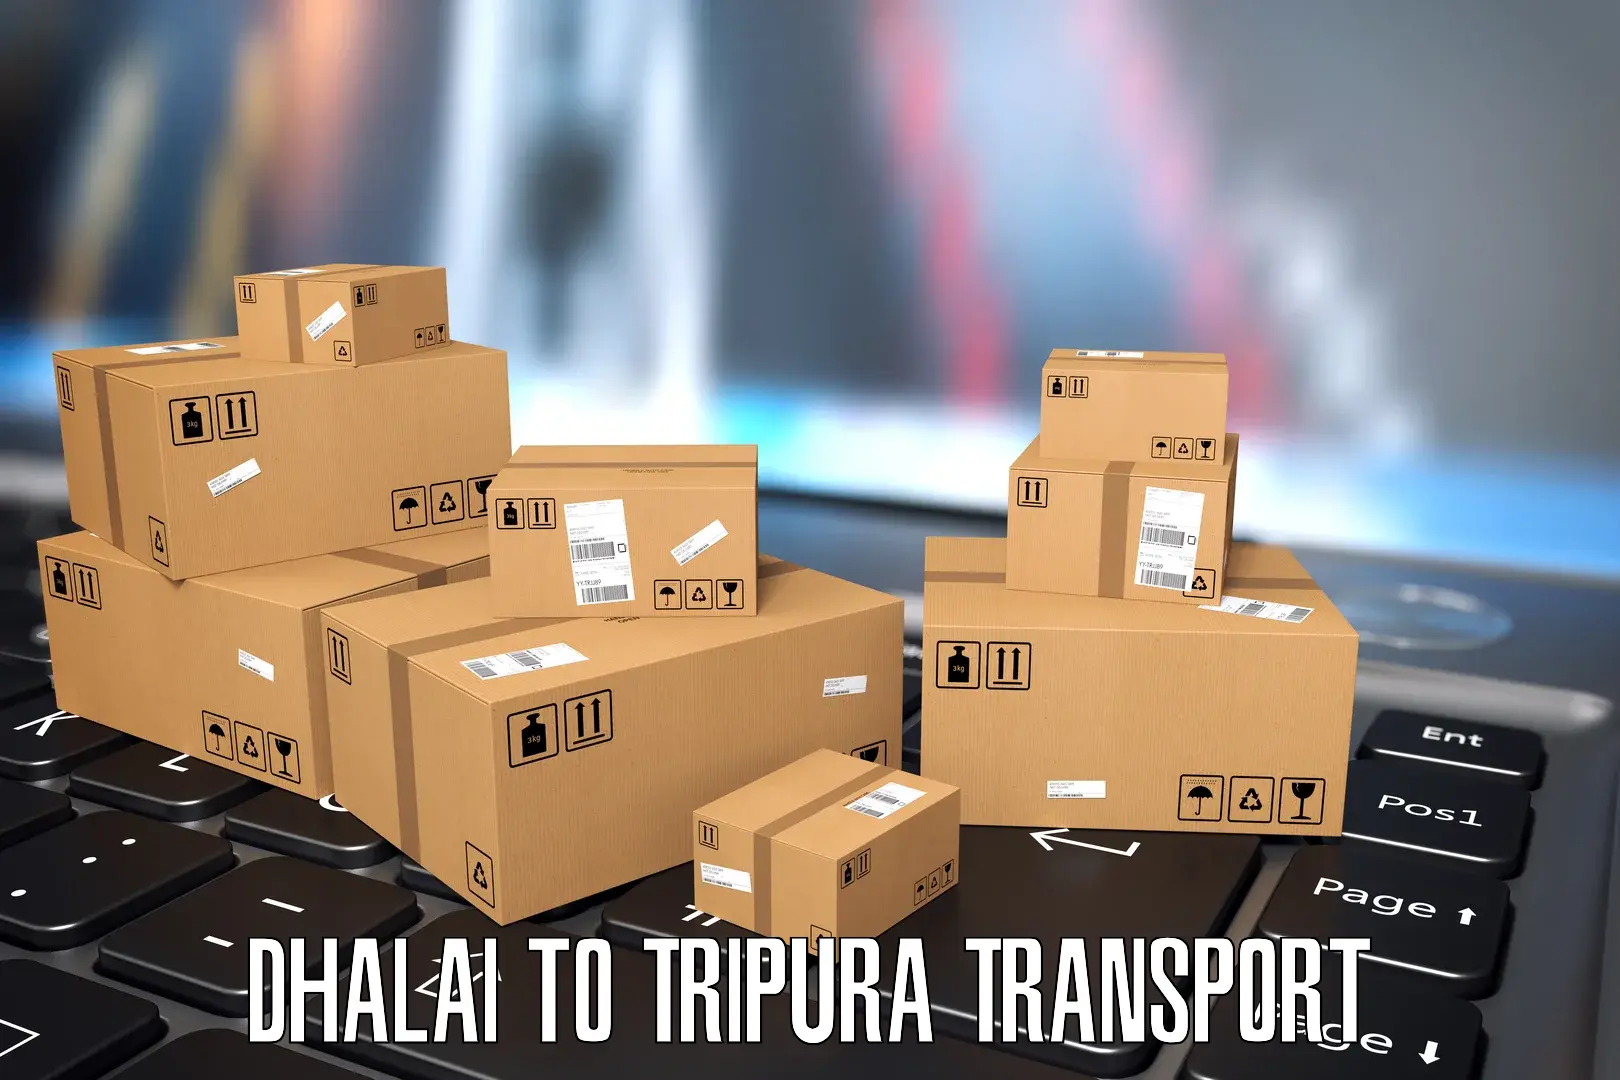 India truck logistics services Dhalai to Kailashahar